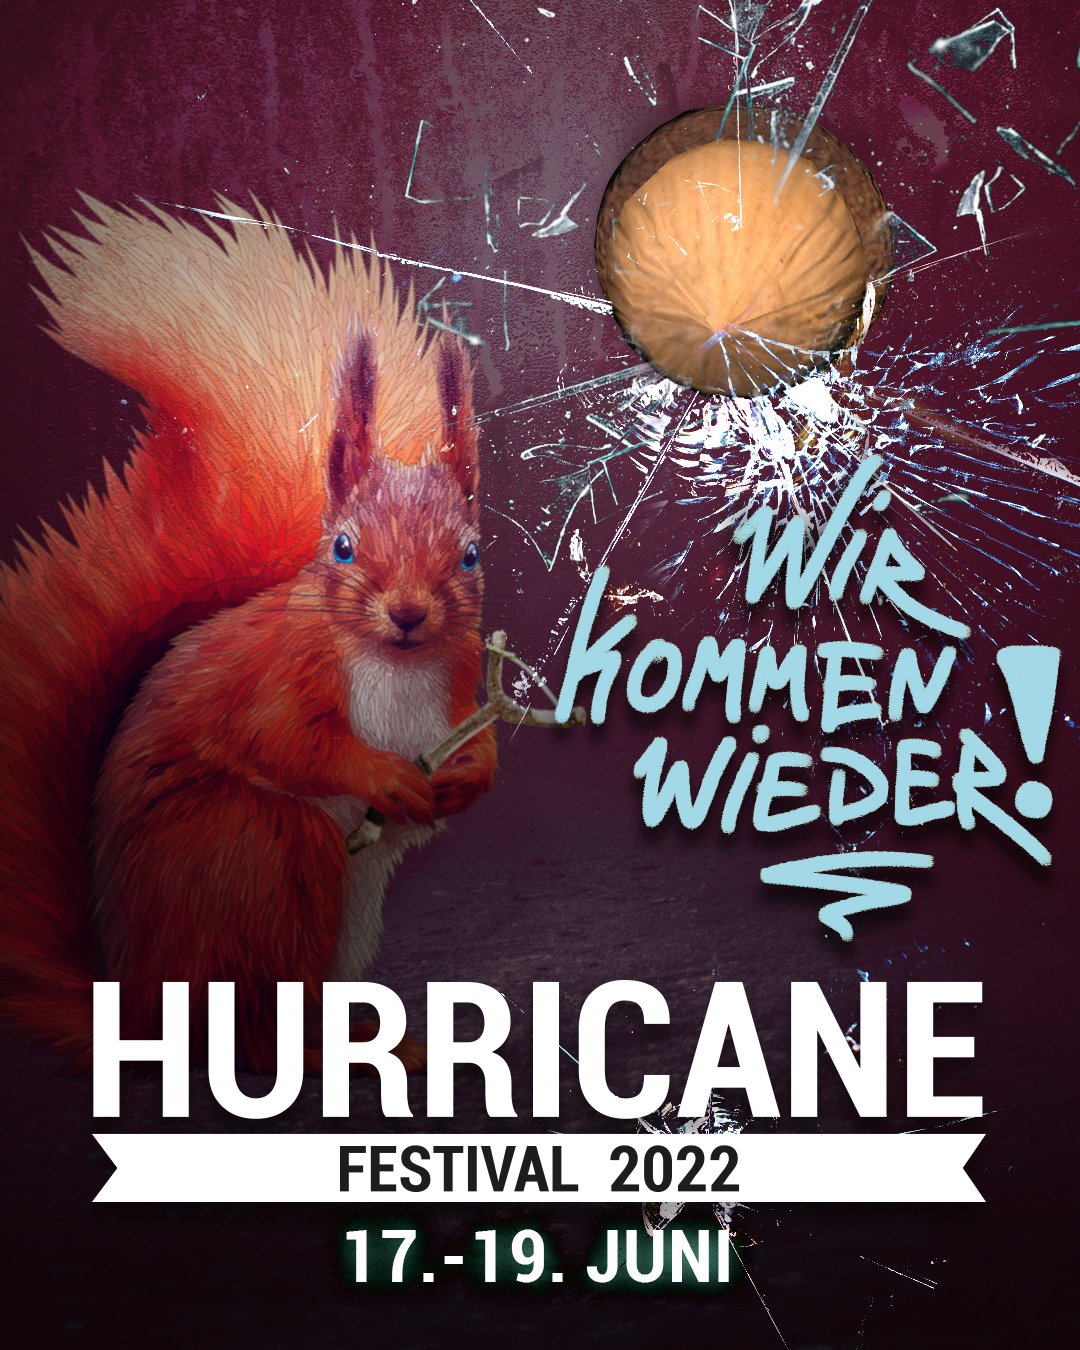 Hurricane 2022 at Eichenring (Scheessel) on 17 Jun 2022 